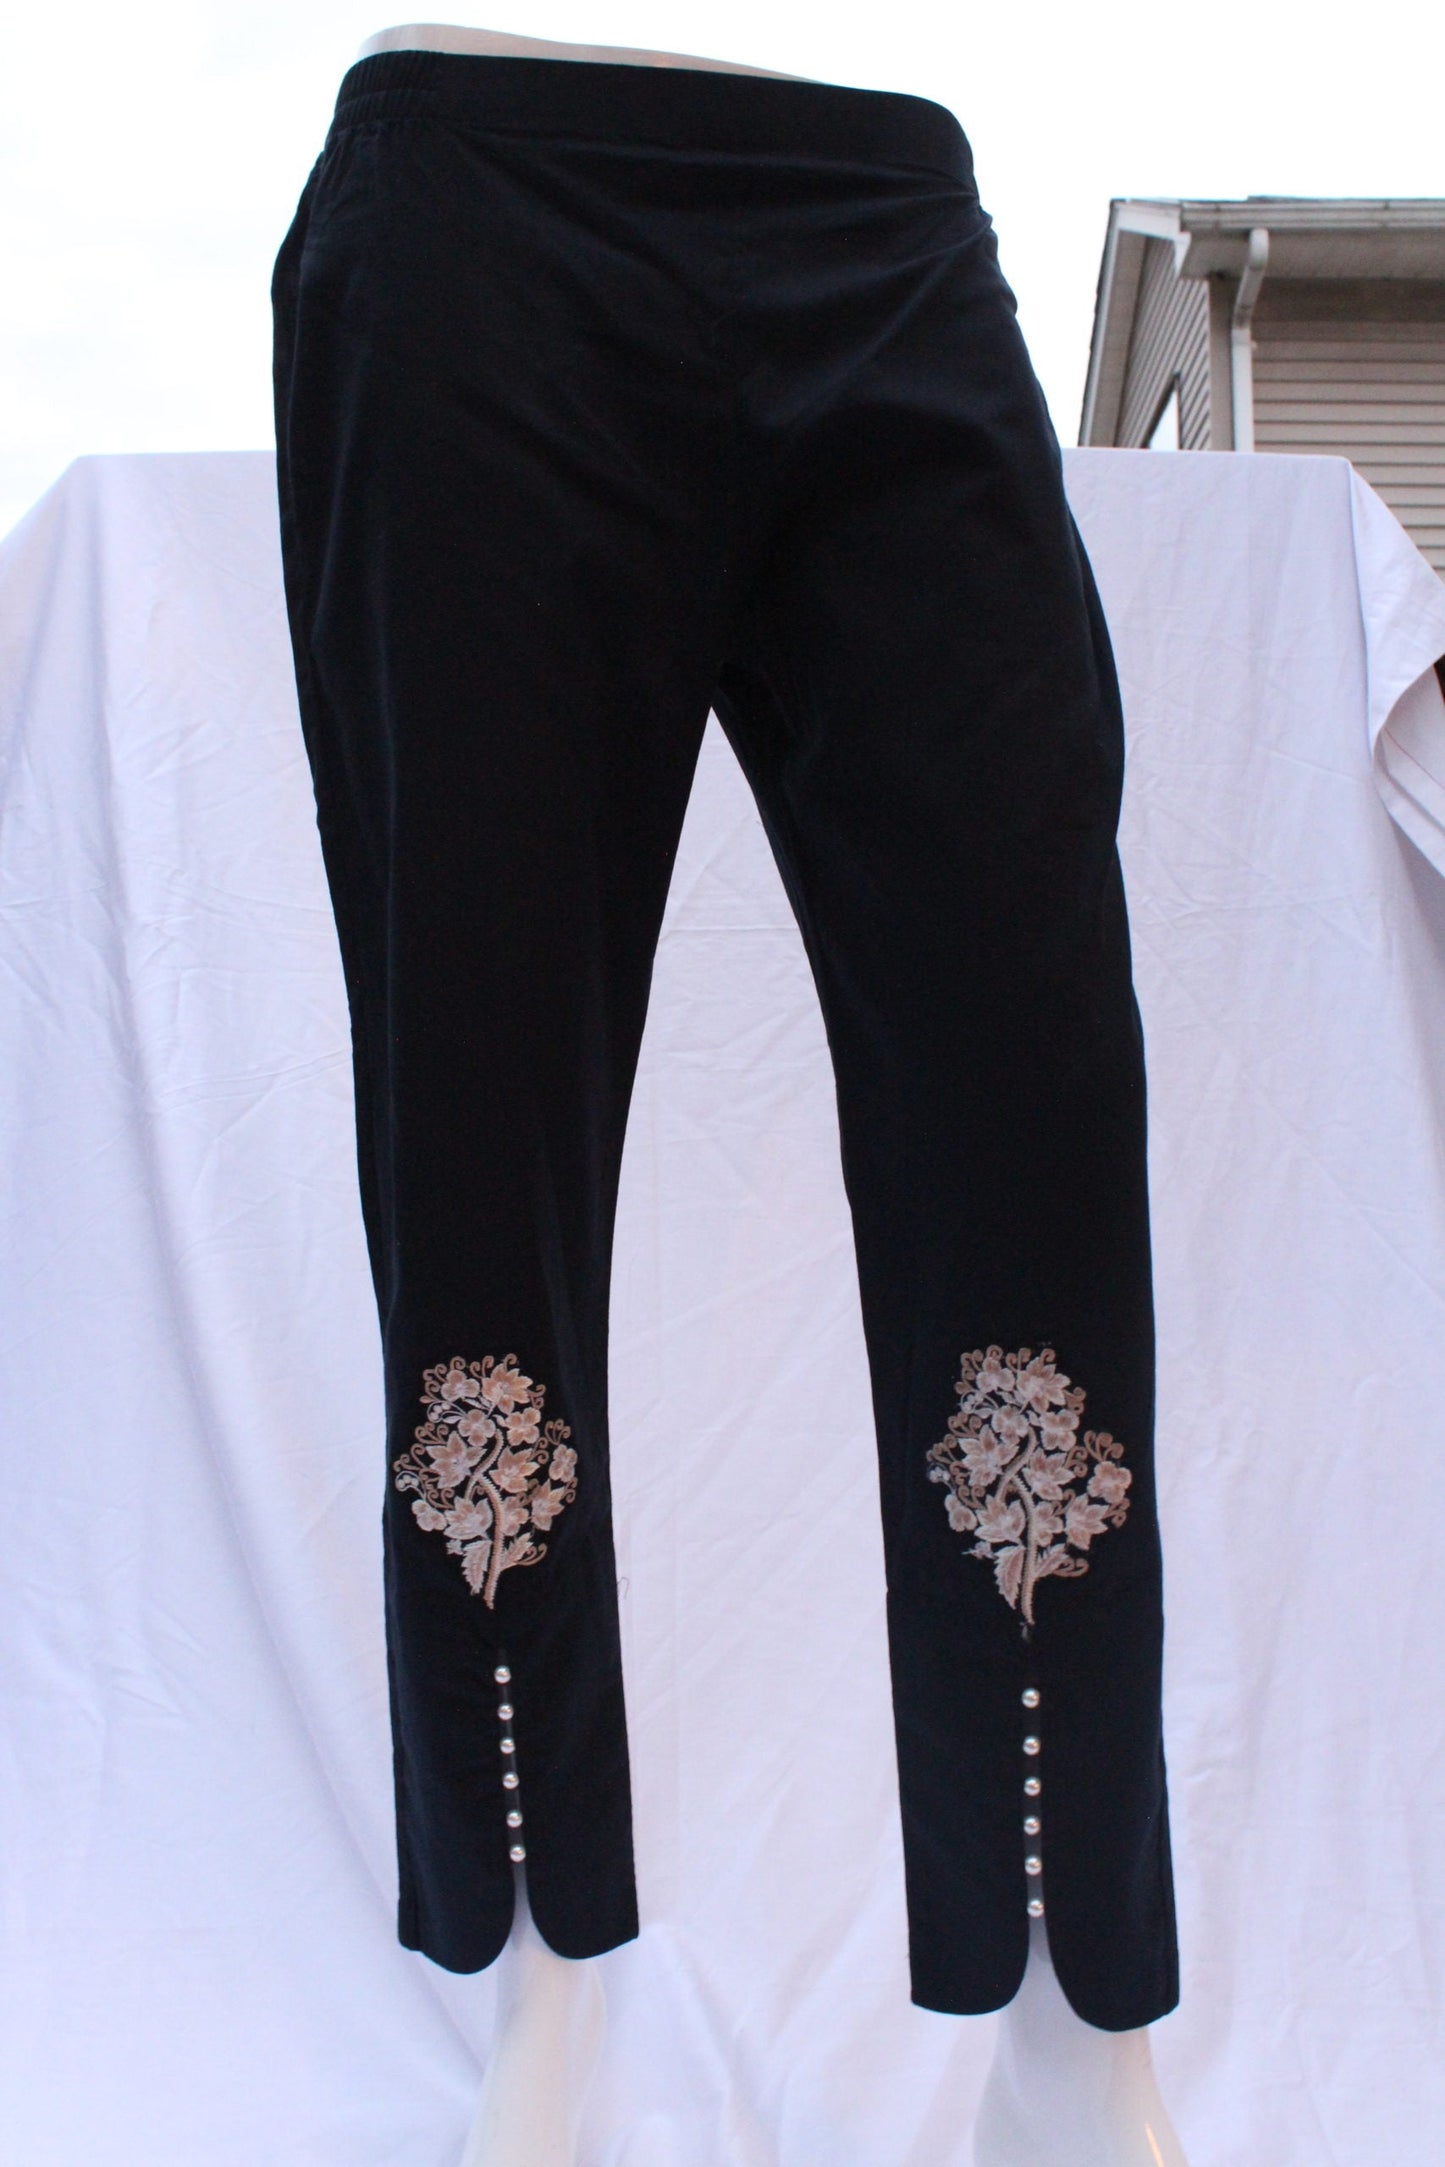 Pakistani Black Pearl Embroidered Pants